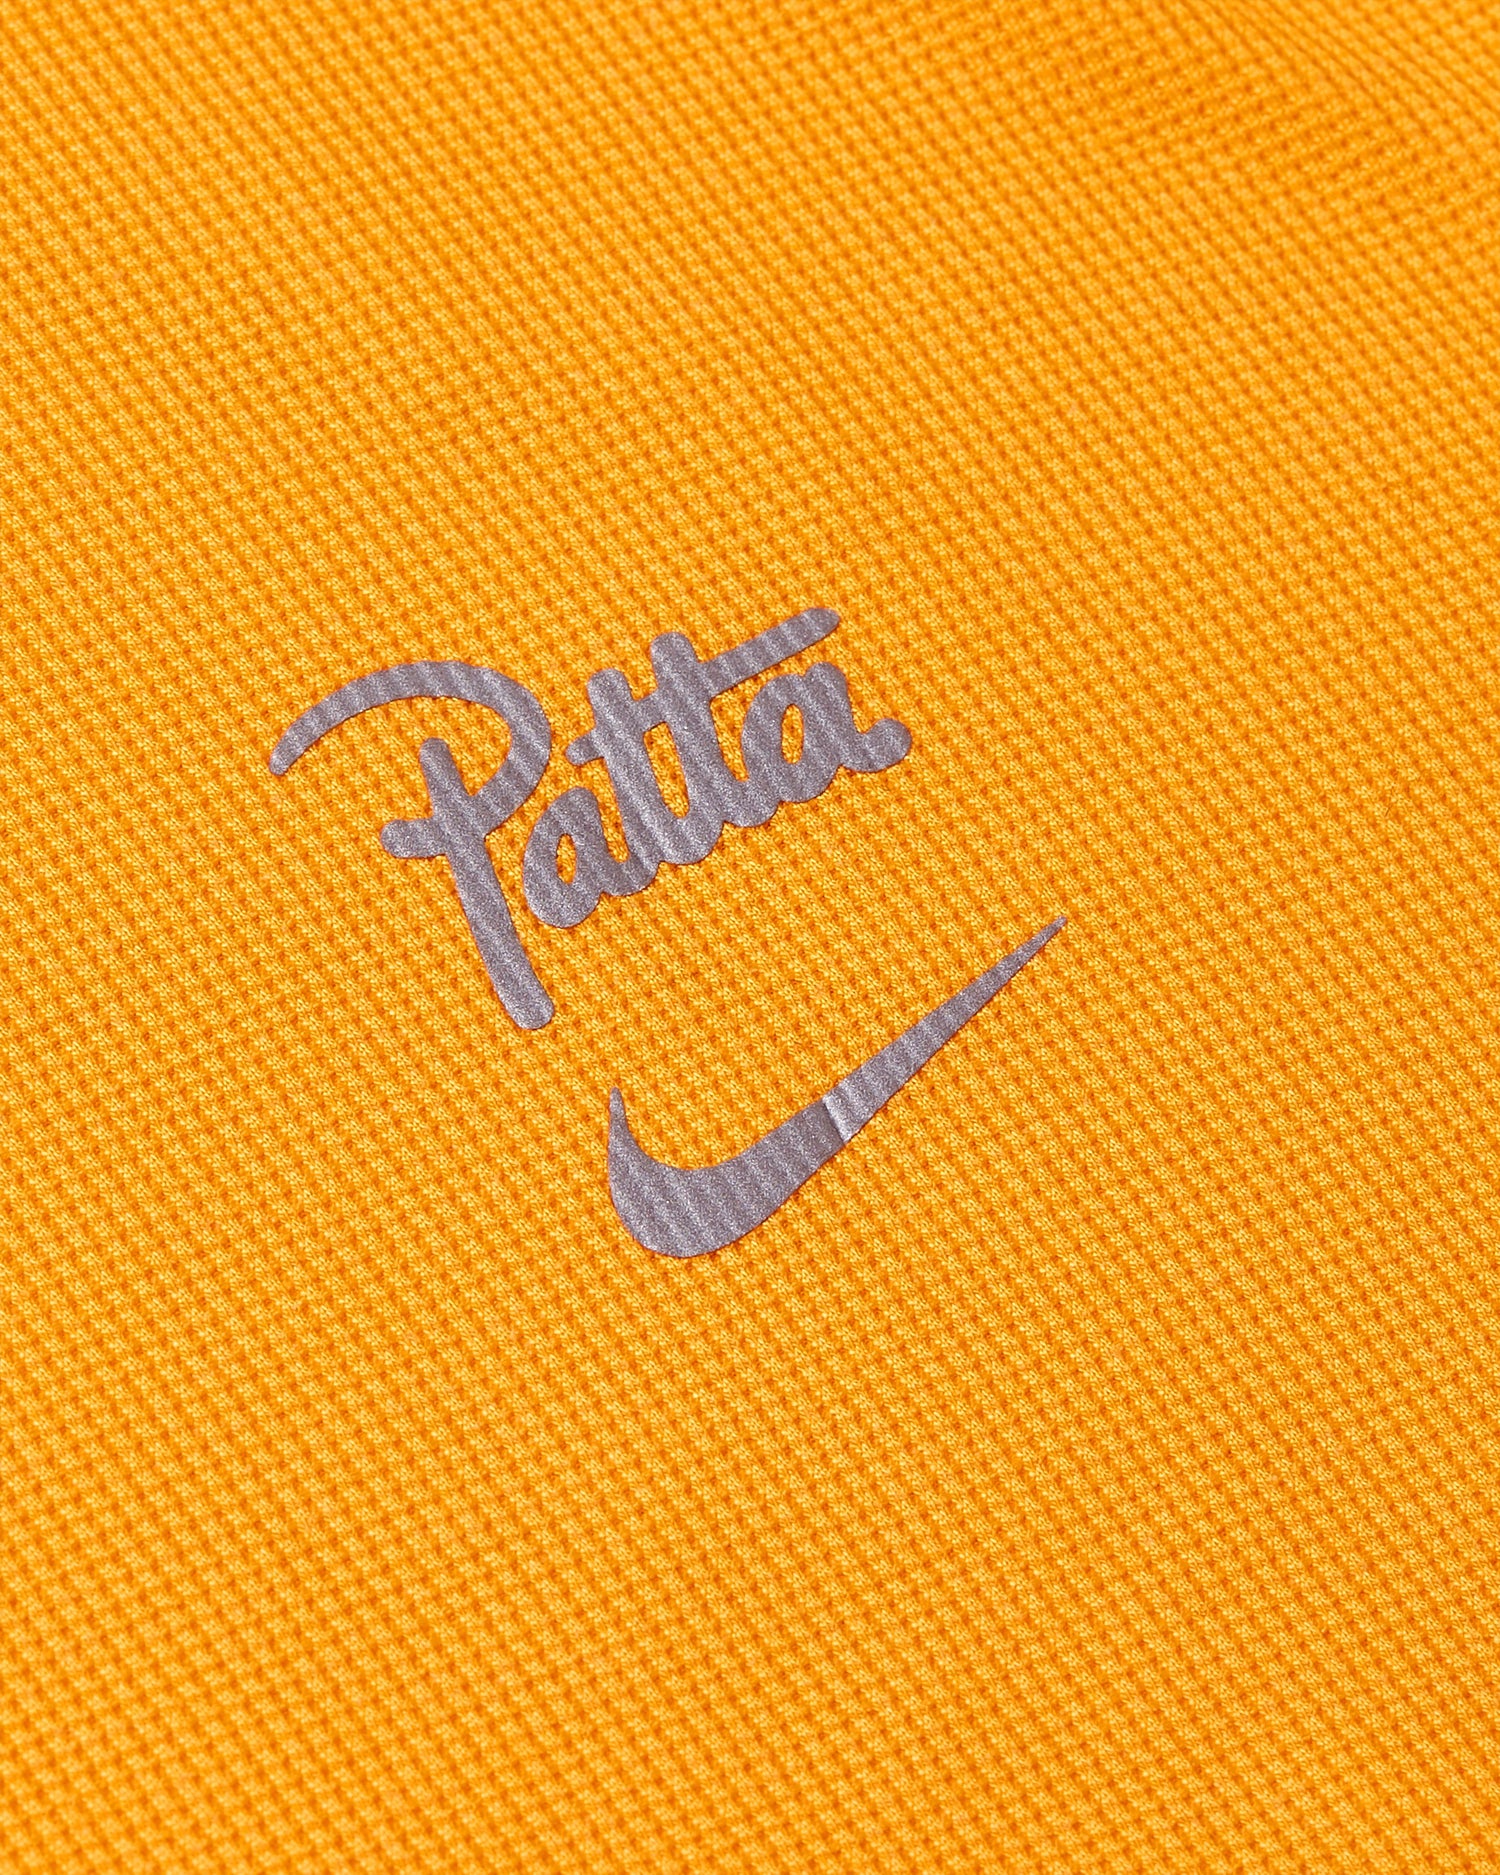 Nike x Patta Running Team T-shirt (Sundial)